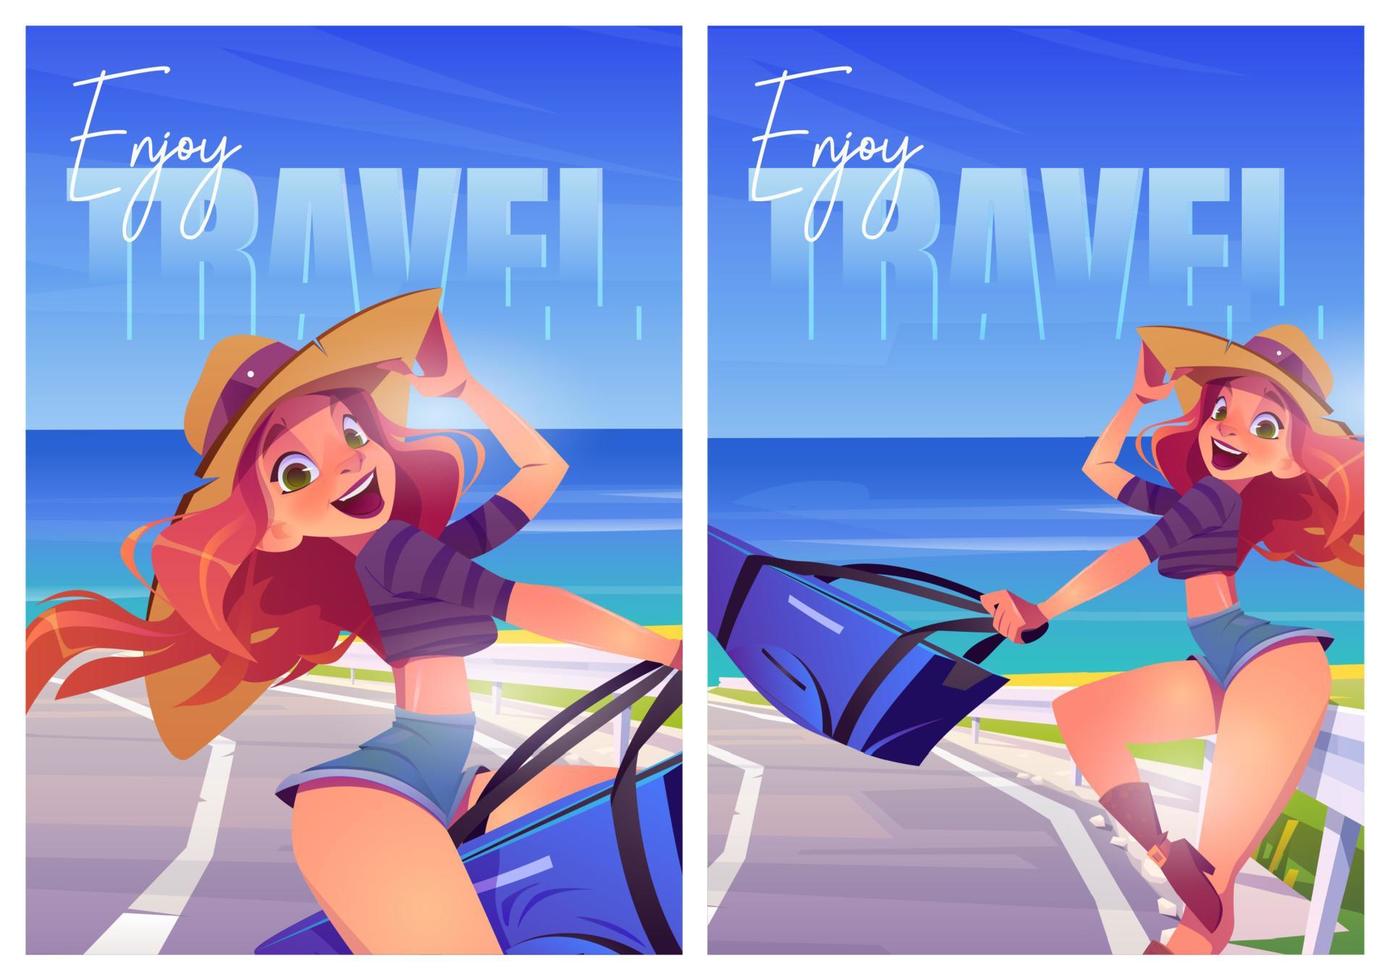 Enjoy summer travel cartoon posters, ocean journey vector